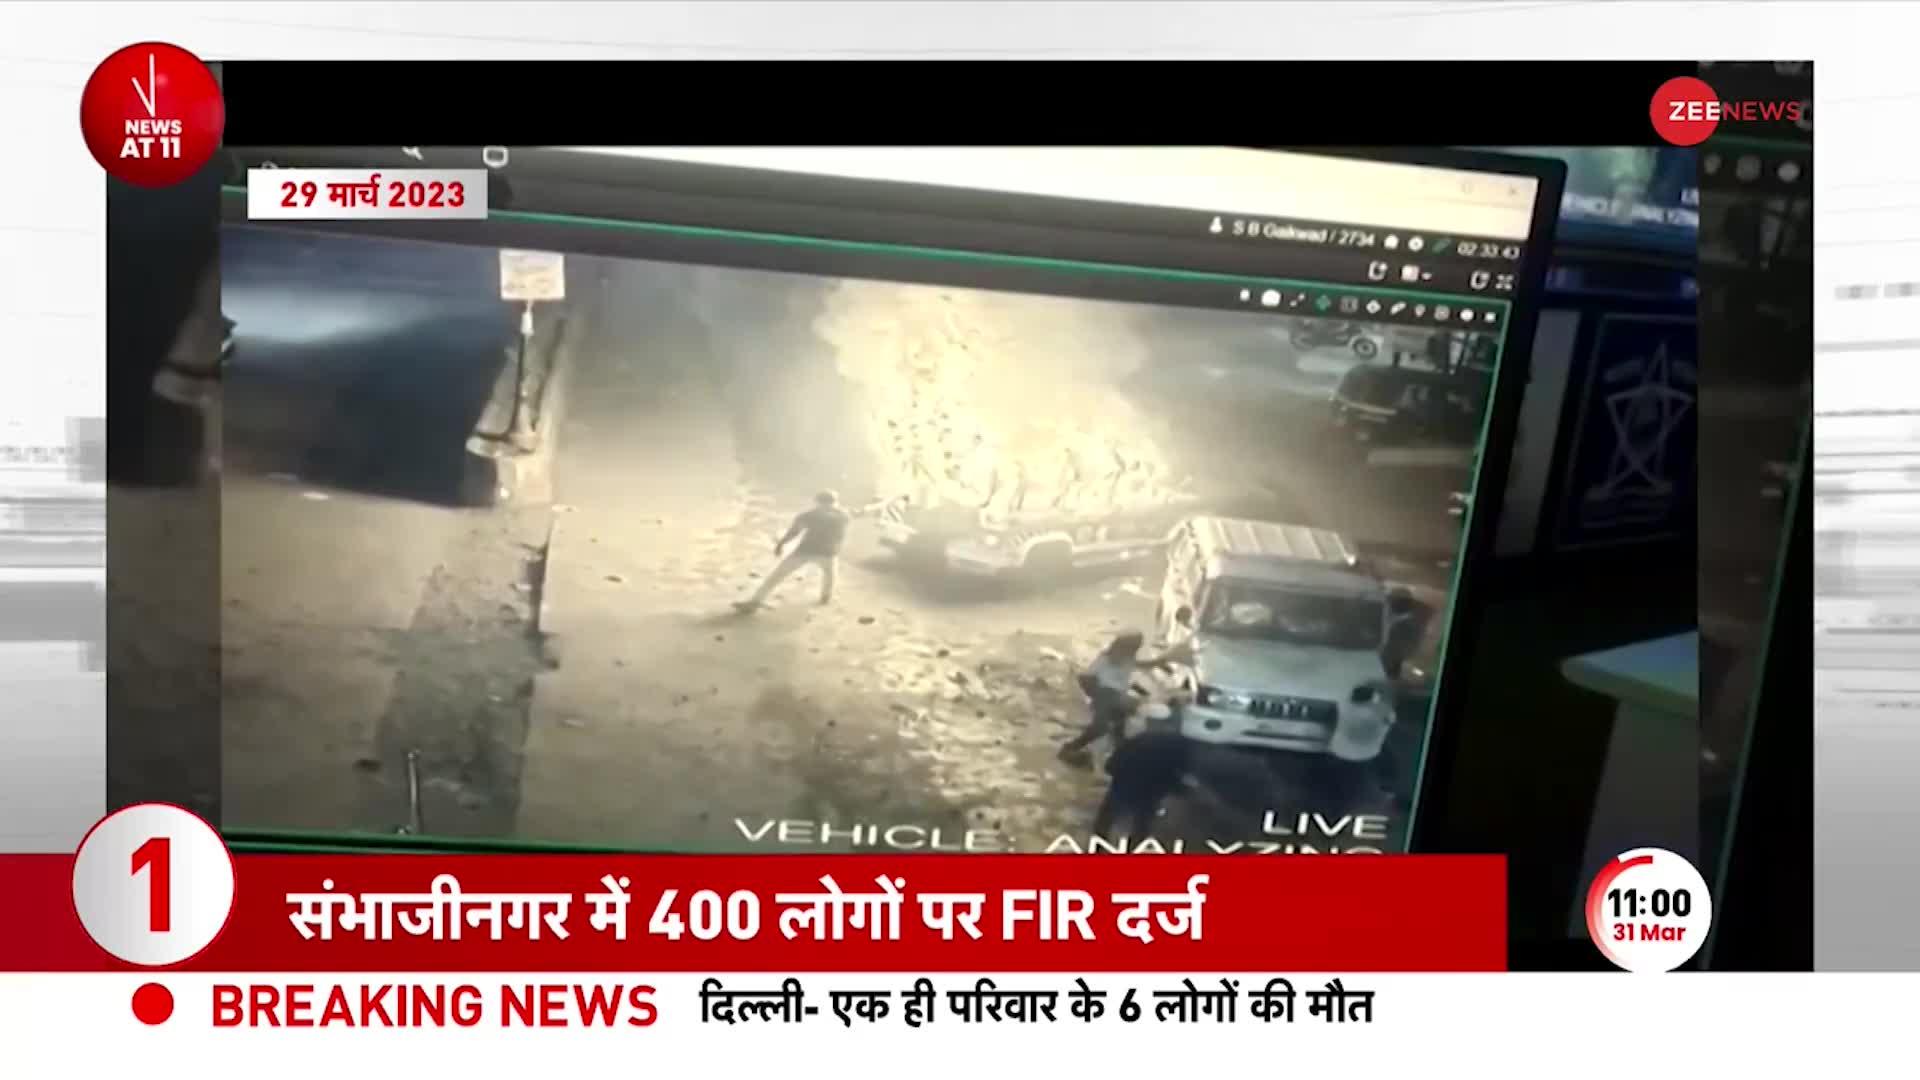 Sambhaji Nagar Dangal: Ram Navami के मौके पर Maharashtra में हिंसा, 400 लोगों पर FIR दर्ज